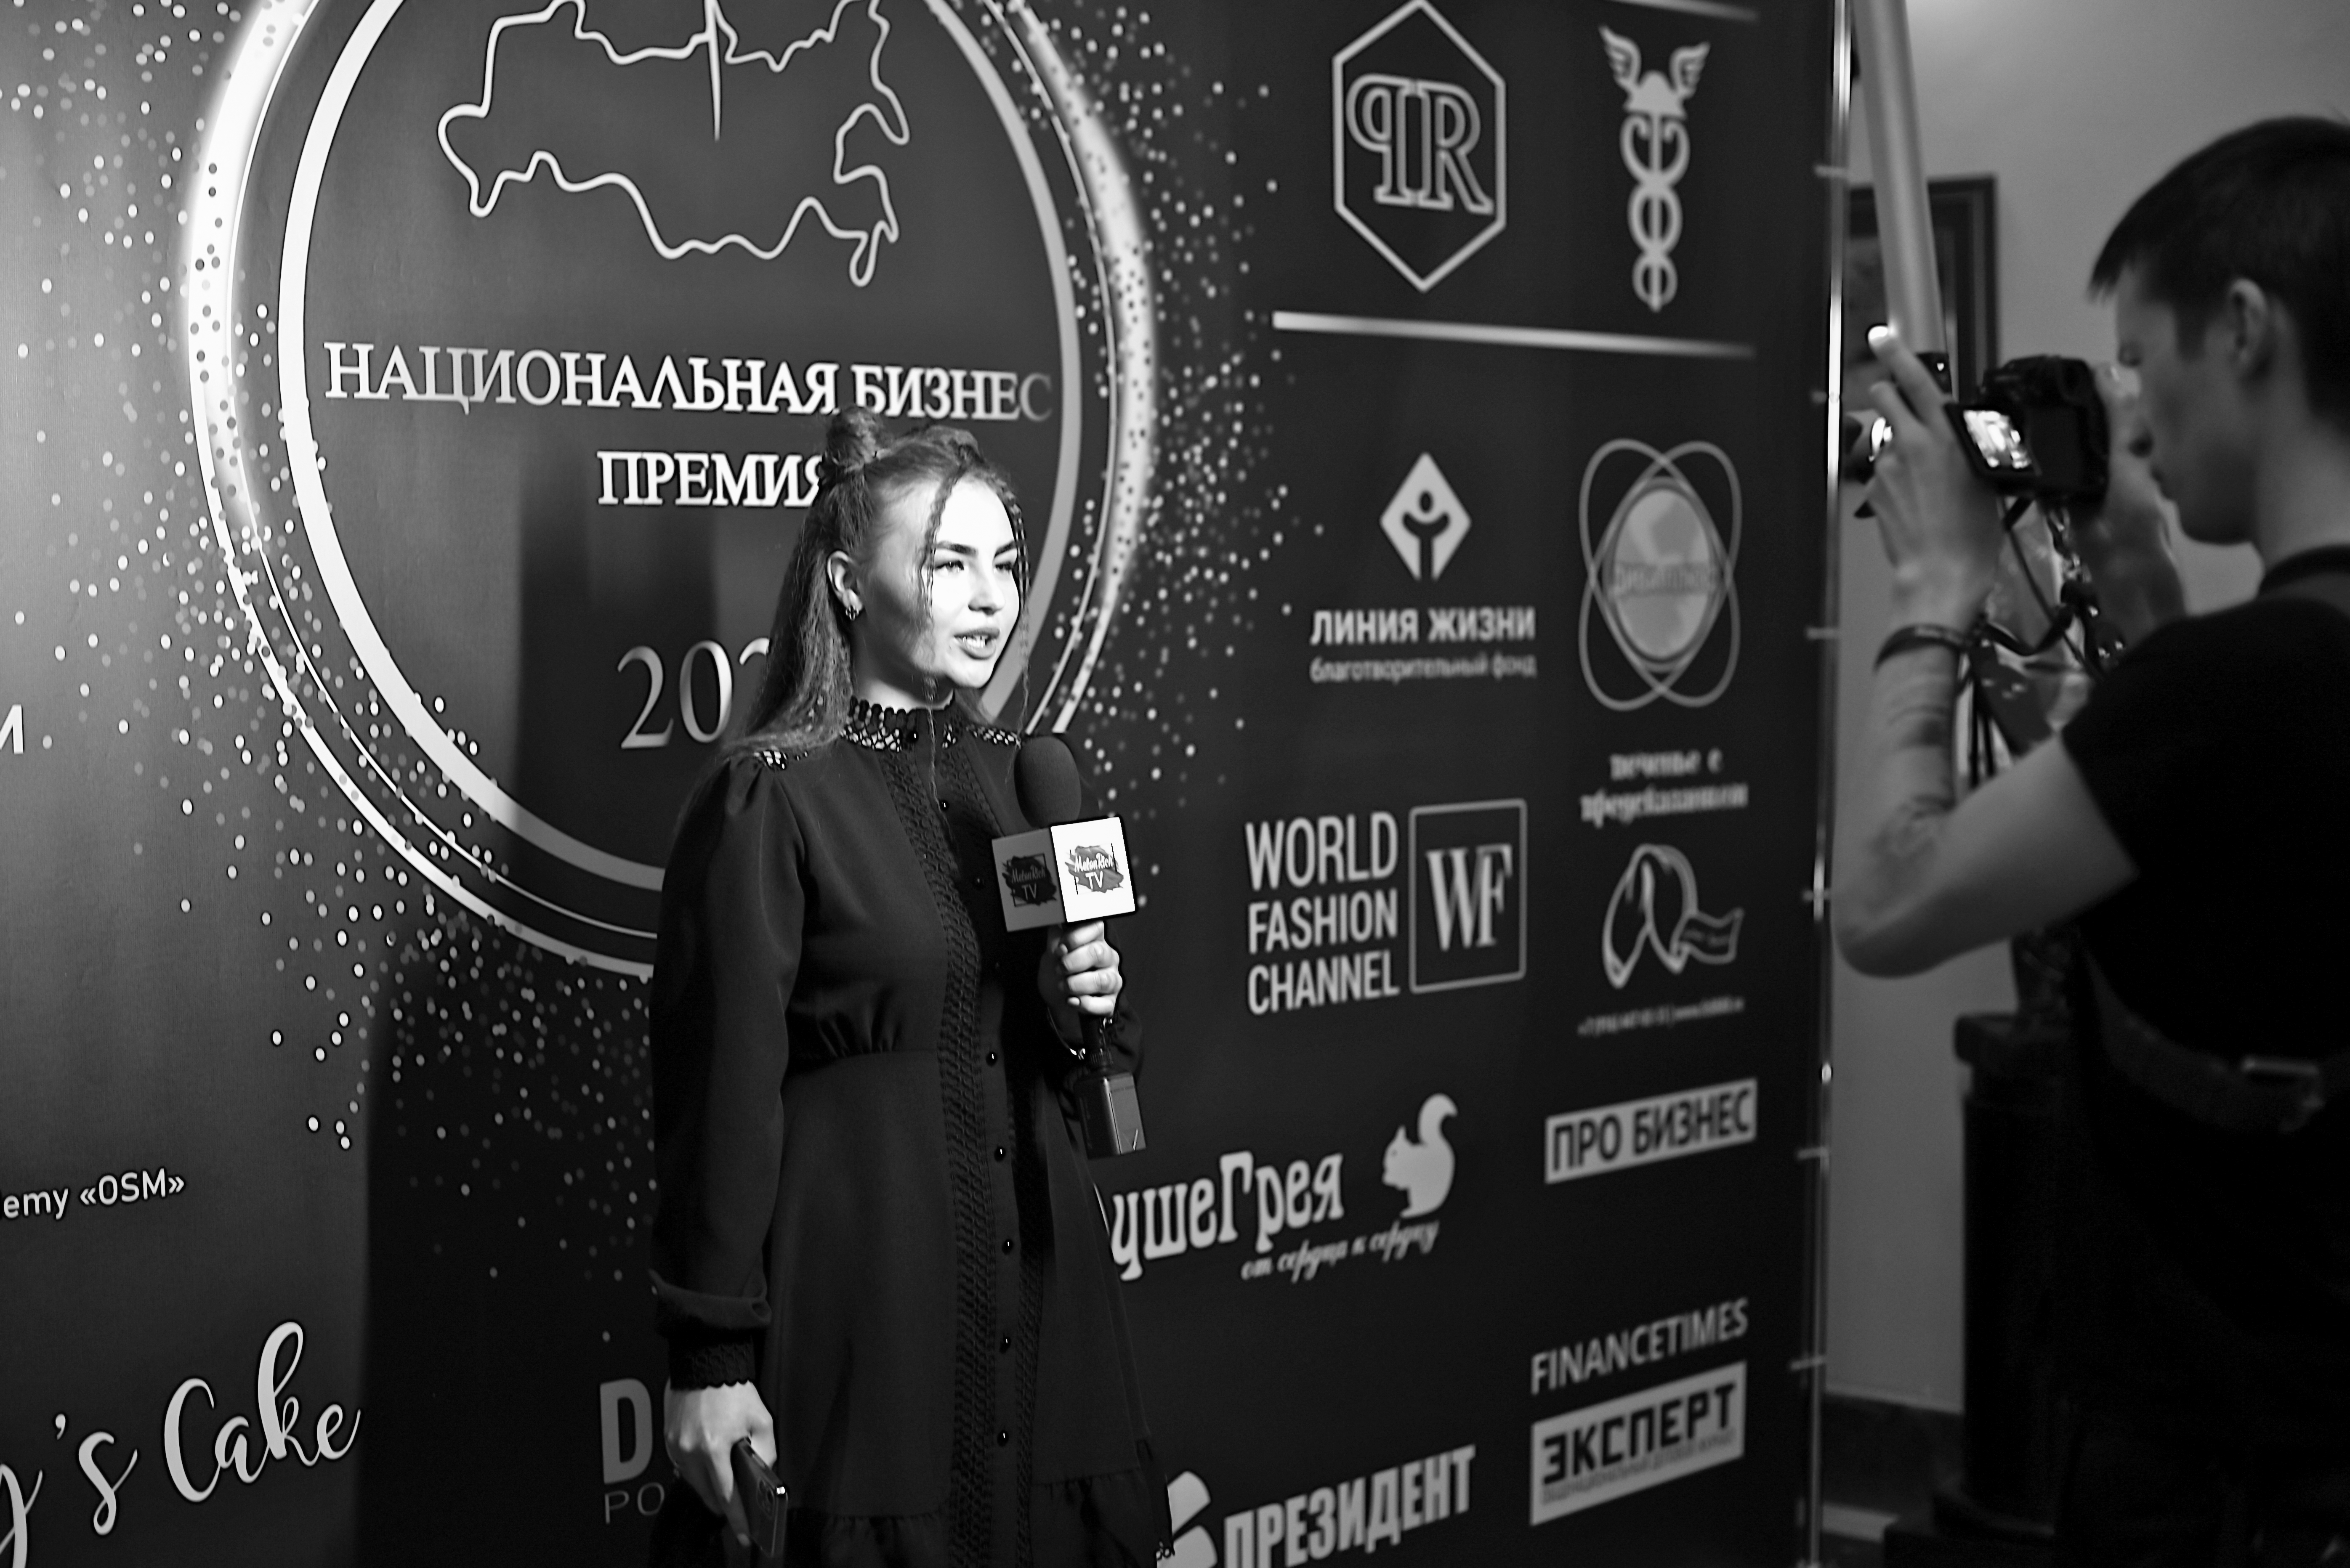 бизнес премия в москве видео 2022